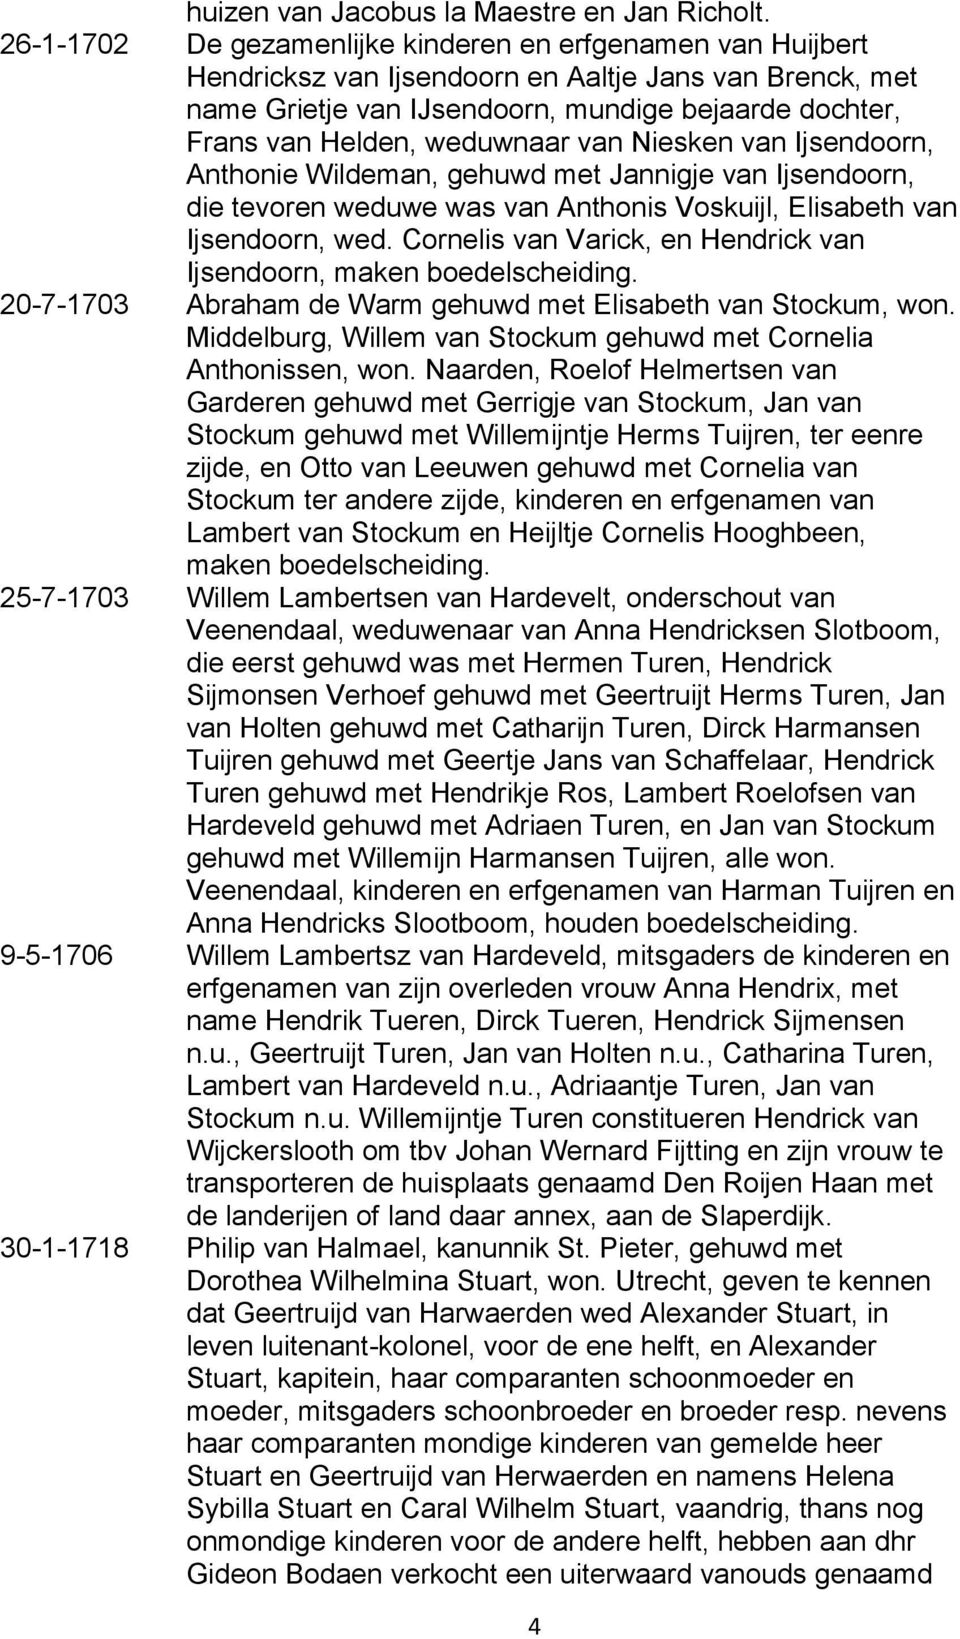 weduwnaar van Niesken van Ijsendoorn, Anthonie Wildeman, gehuwd met Jannigje van Ijsendoorn, die tevoren weduwe was van Anthonis Voskuijl, Elisabeth van Ijsendoorn, wed.